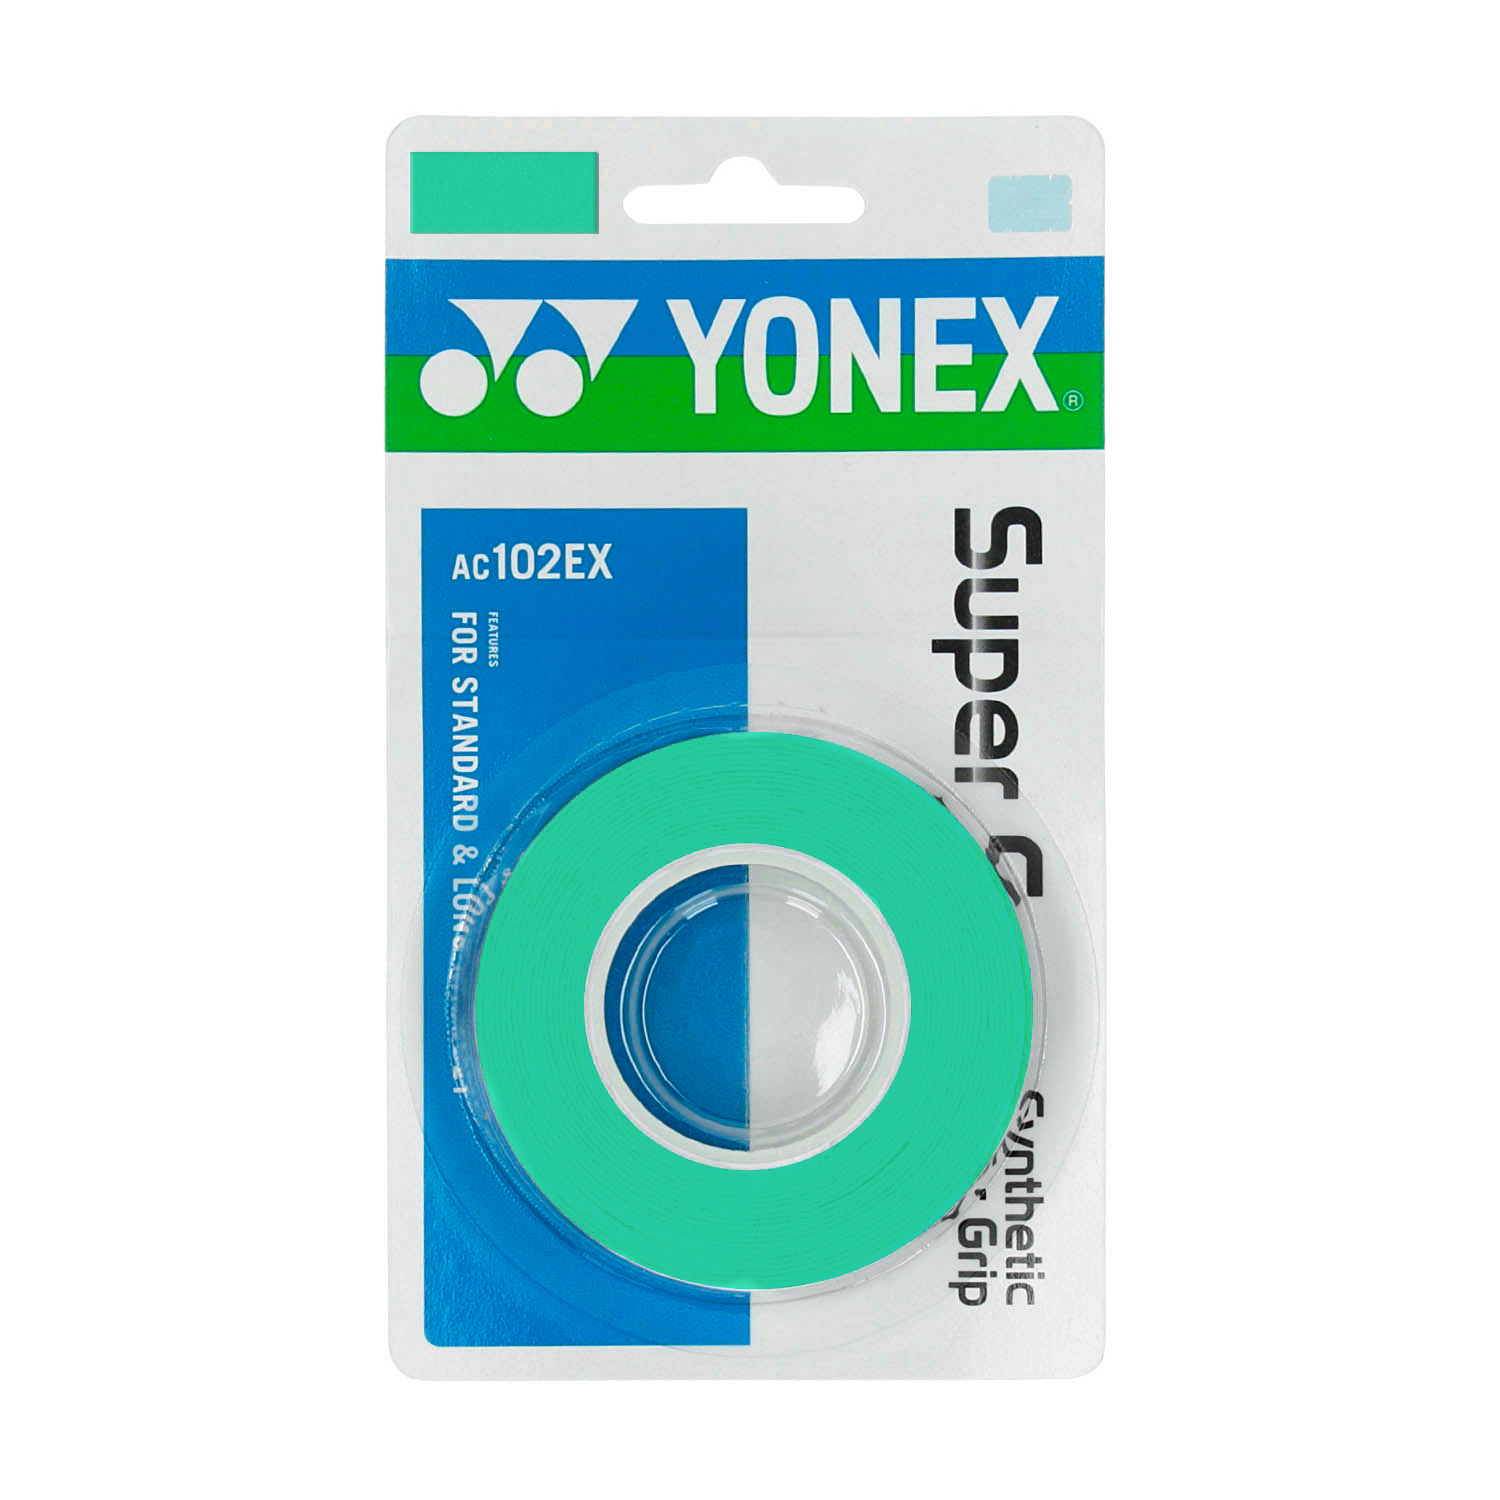 Yonex Super Grap Overgrip x 3 - Green